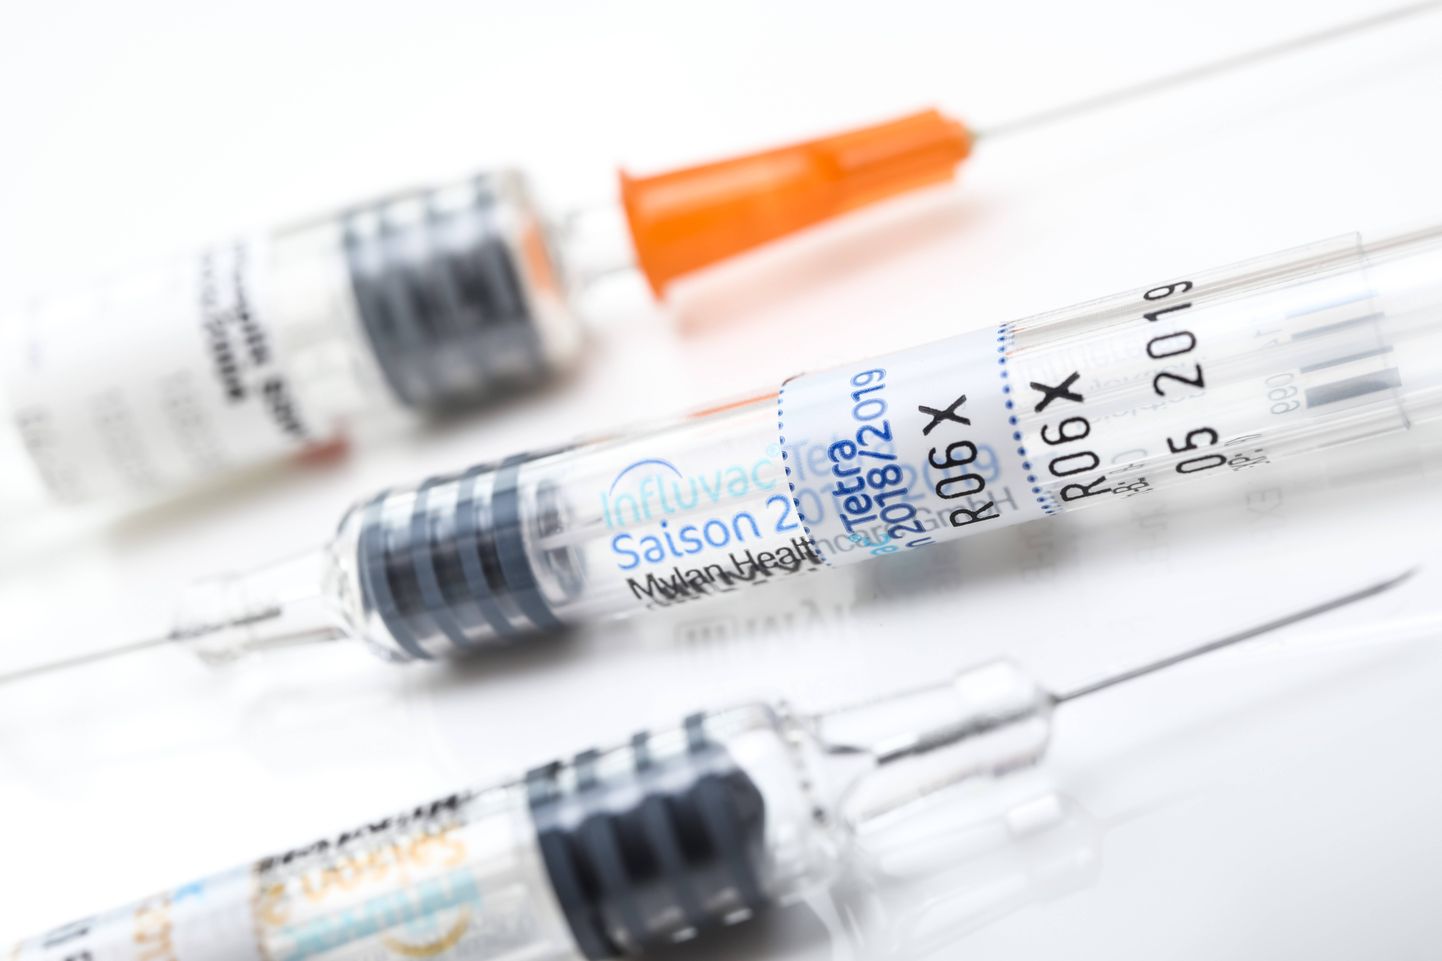 Soome minister soovib peretoetused vaktsineerimisnõuetega siduda.